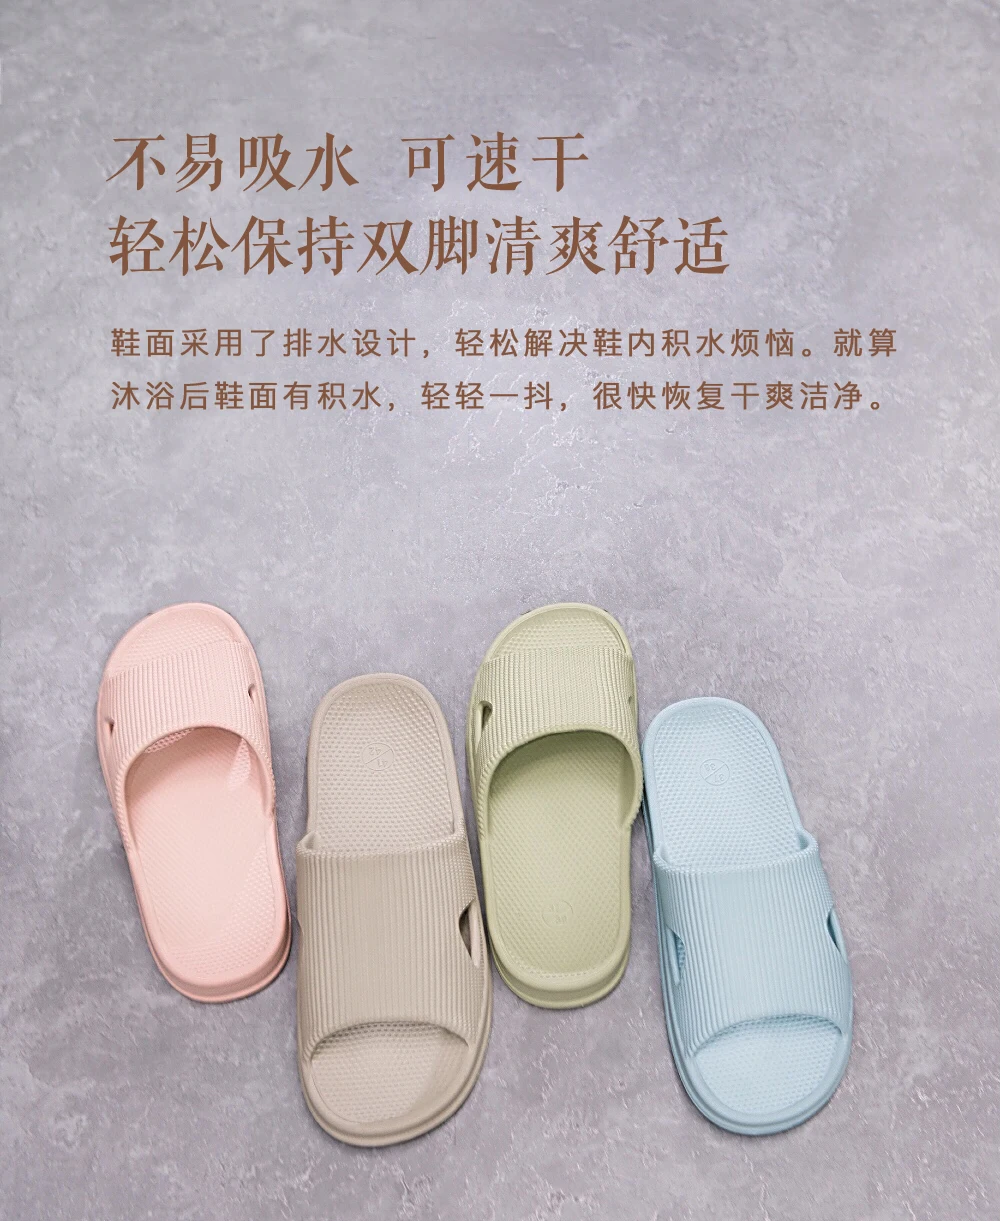 Xiao mi jia/тапочки мягкие женские, мужские, детские сандалии Нескользящие домашние тапочки для душа детские повседневные тапочки mi home